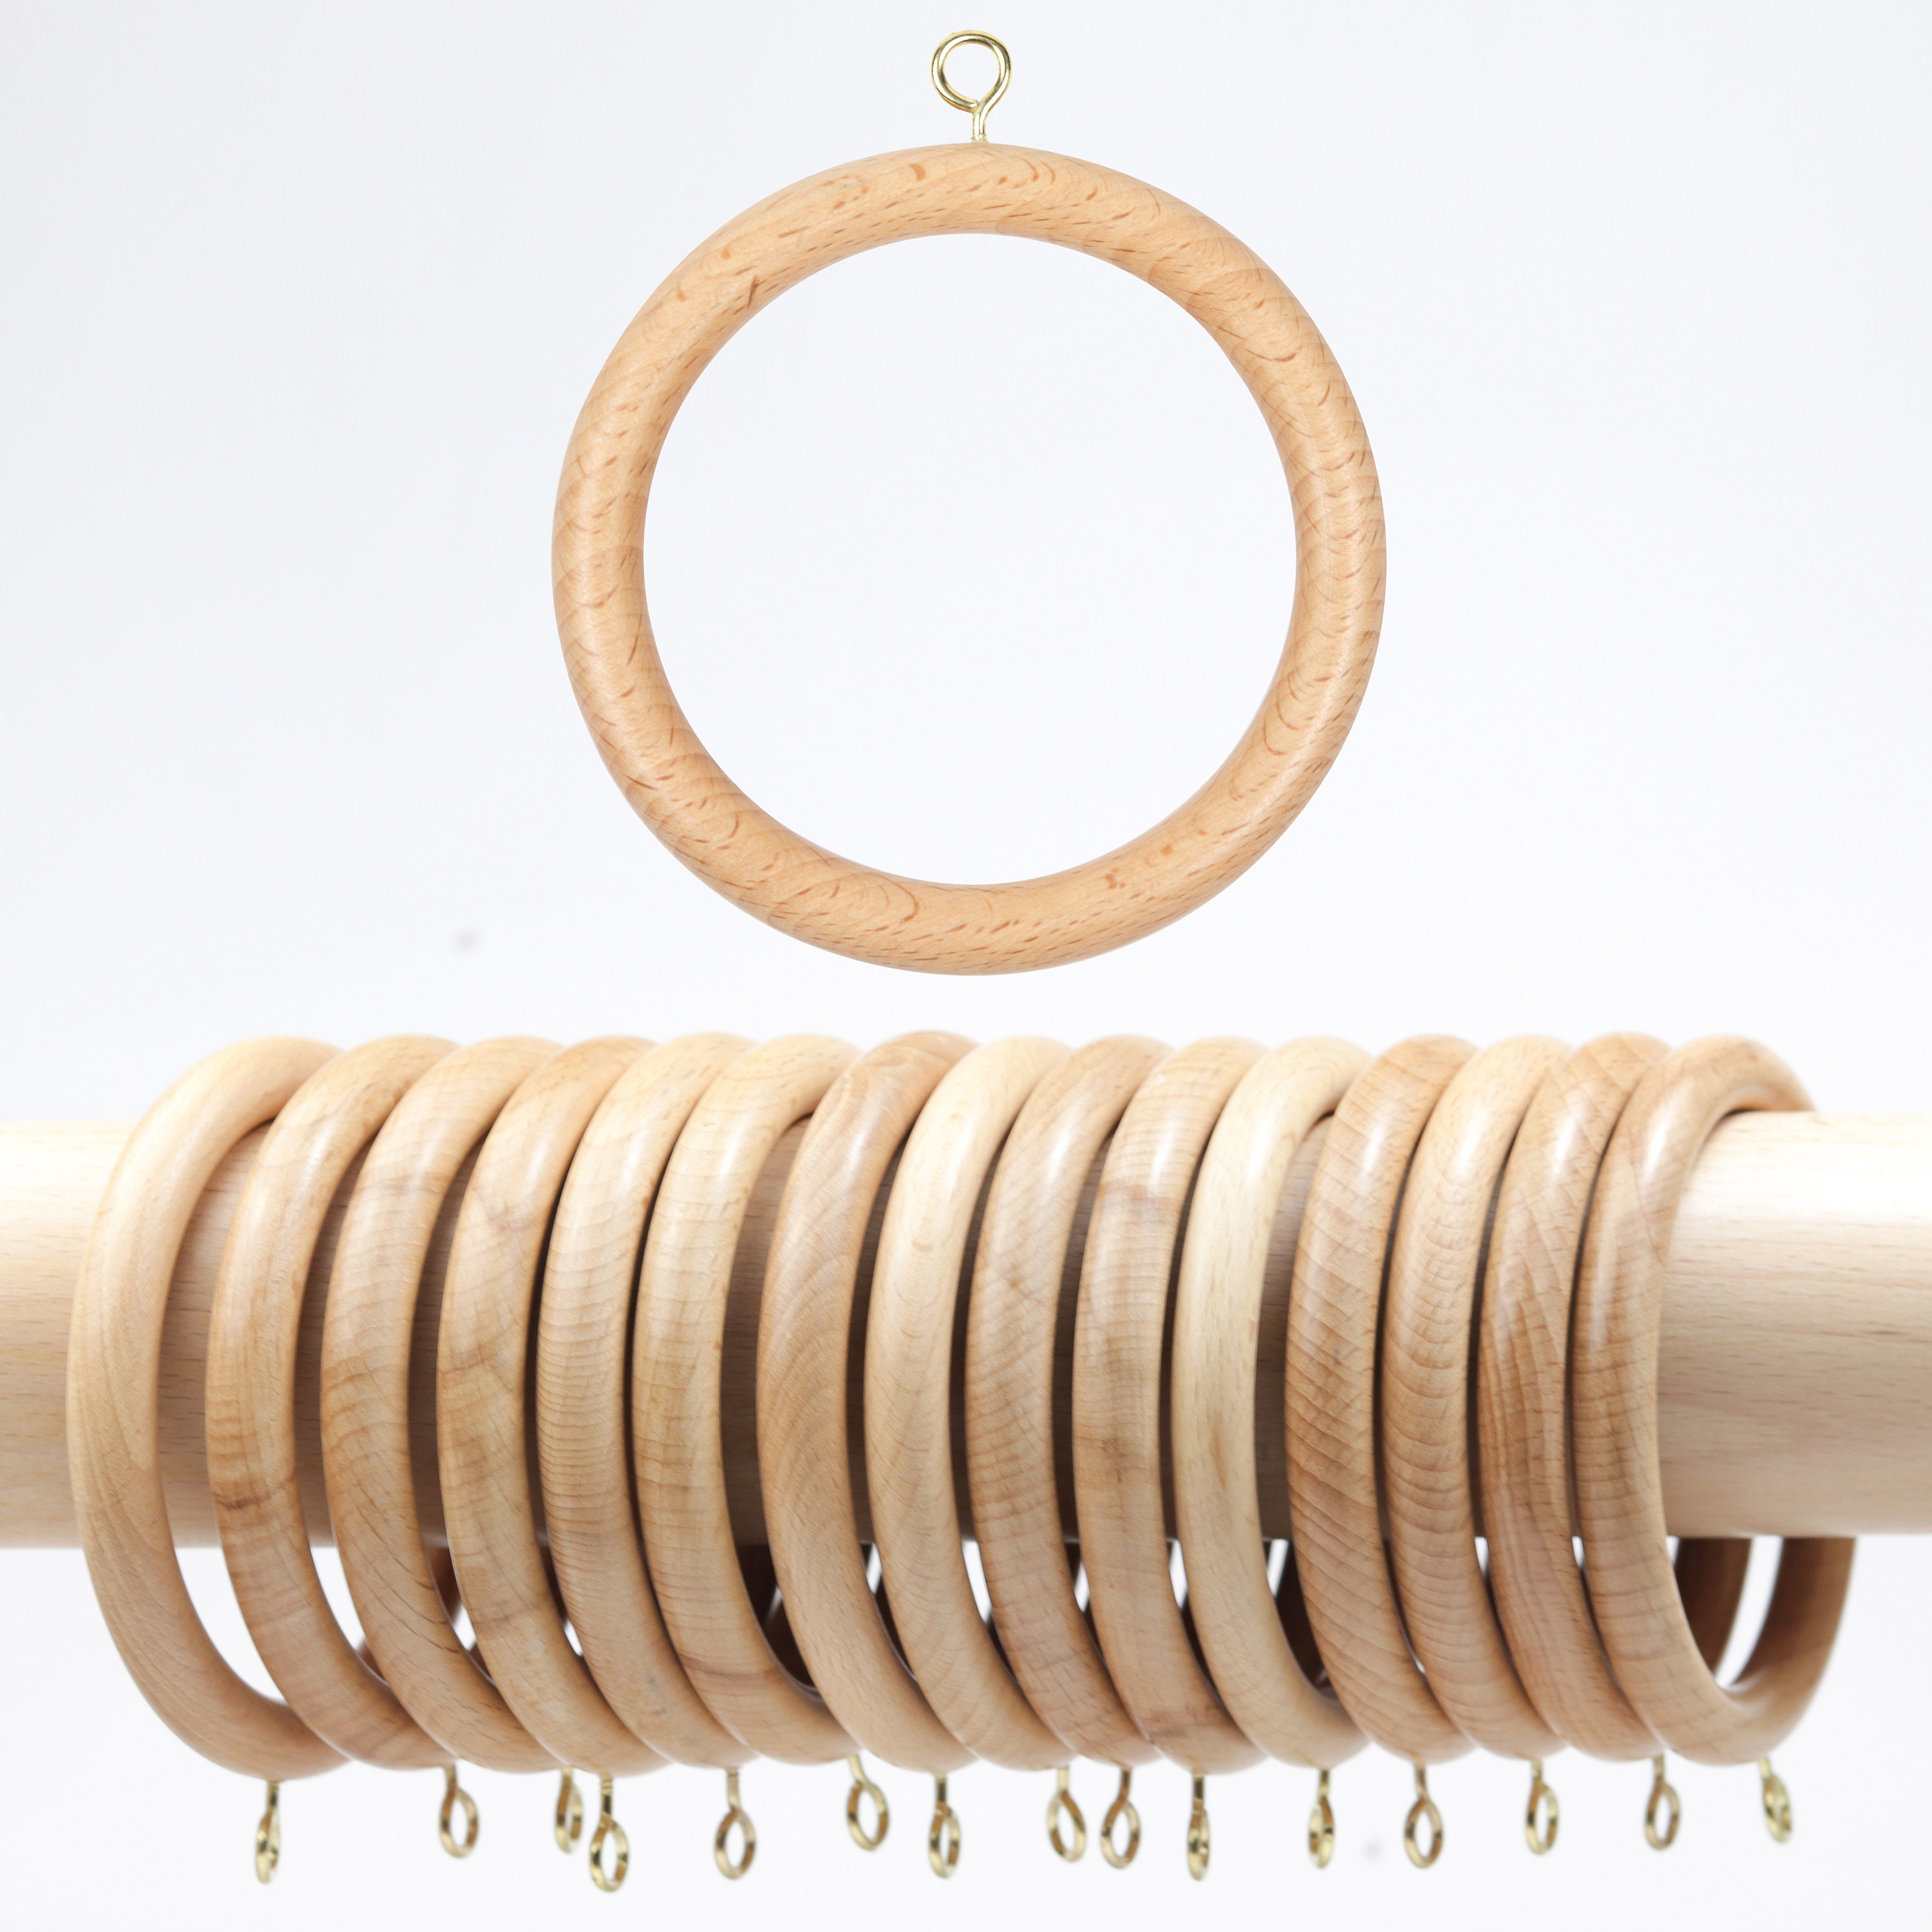 Macrame by JM - Wood Macrame rings/ 6 pieces, macrame supplies, 55mm, –  Wööl emporium de laine